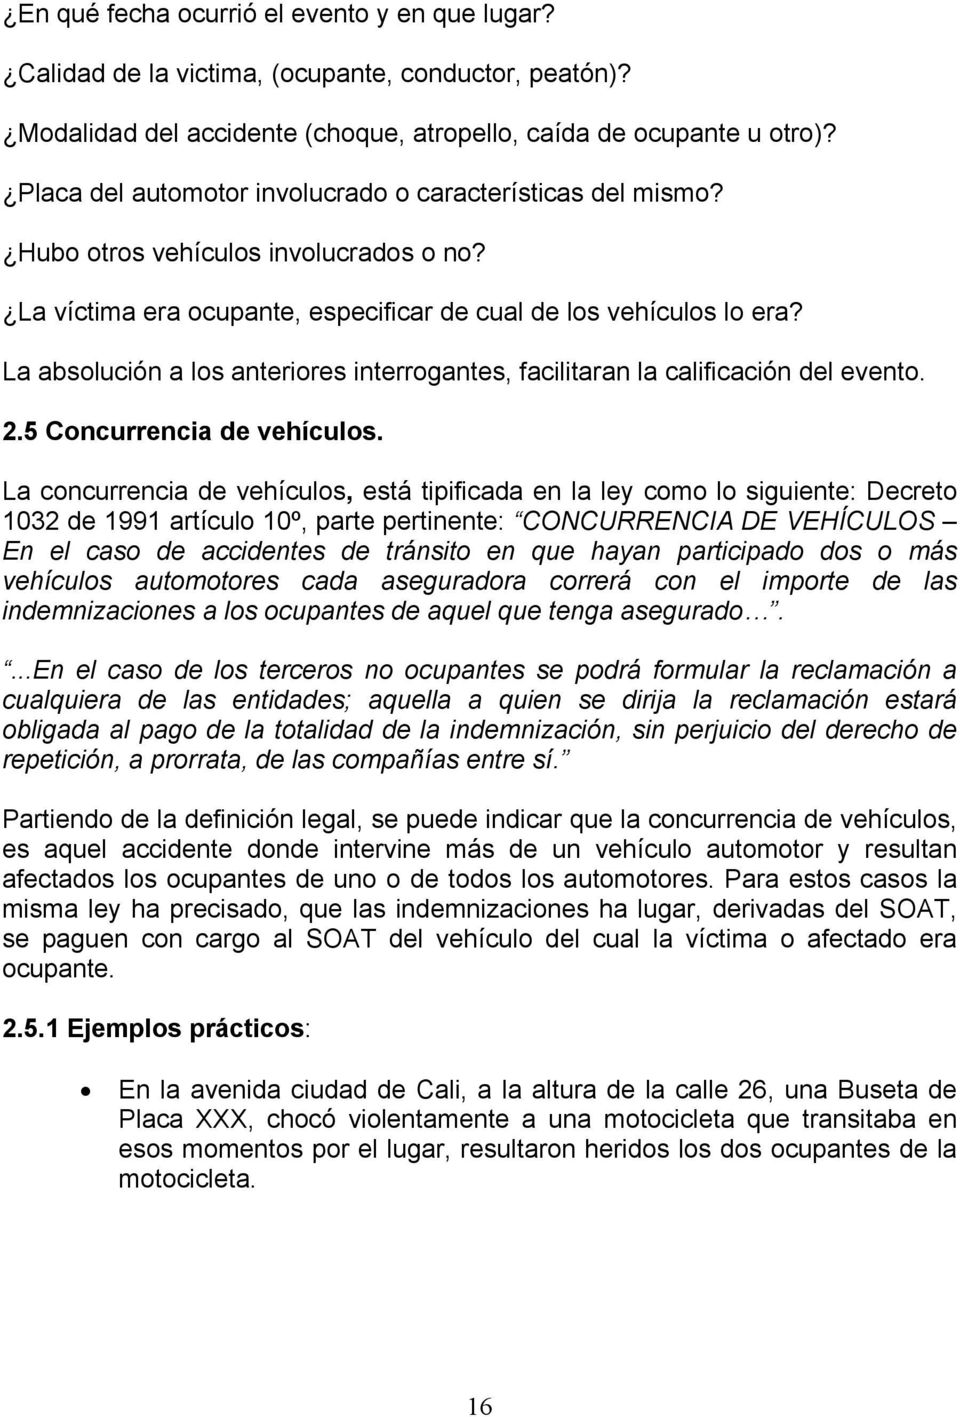 La absolución a los anteriores interrogantes, facilitaran la calificación del evento. 2.5 Concurrencia de vehículos.